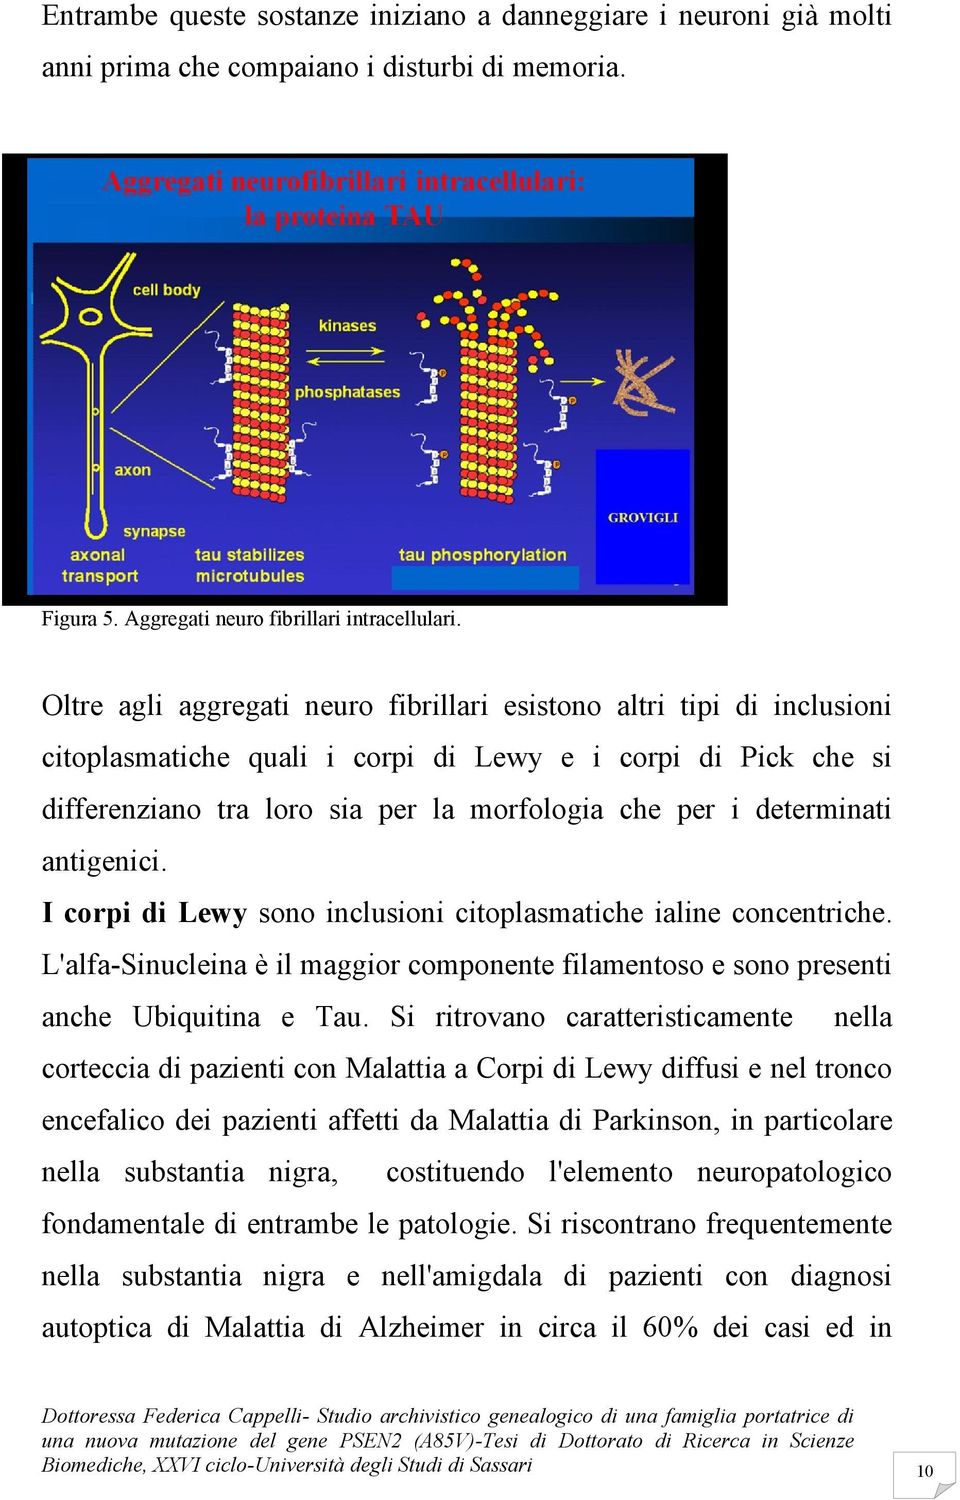 determinati antigenici. I corpi di Lewy sono inclusioni citoplasmatiche ialine concentriche. L'alfa-Sinucleina è il maggior componente filamentoso e sono presenti anche Ubiquitina e Tau.